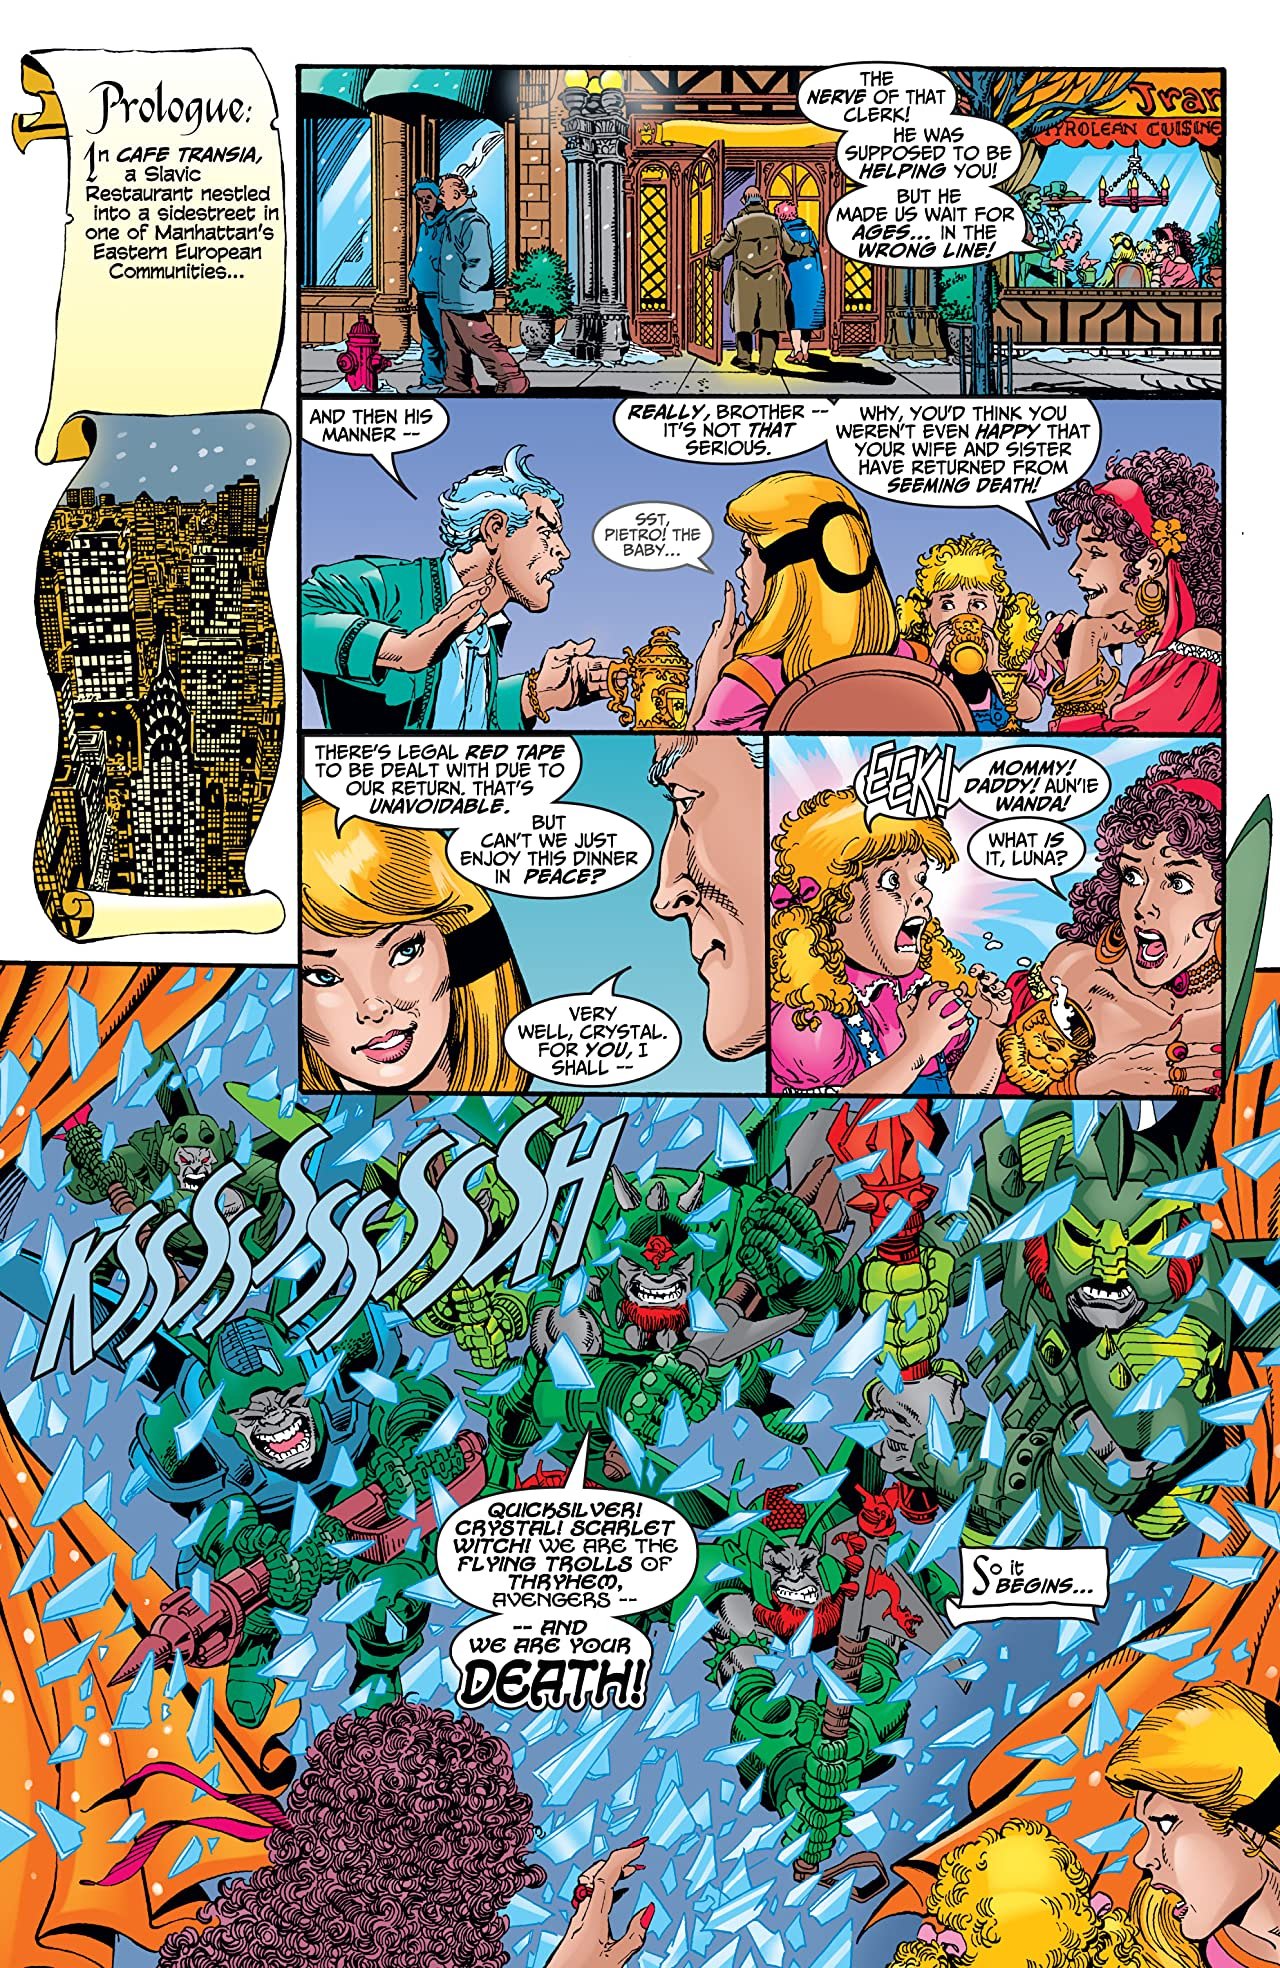 Avengers #7 August 1998 Marvel Comics Busiek Perez Vey